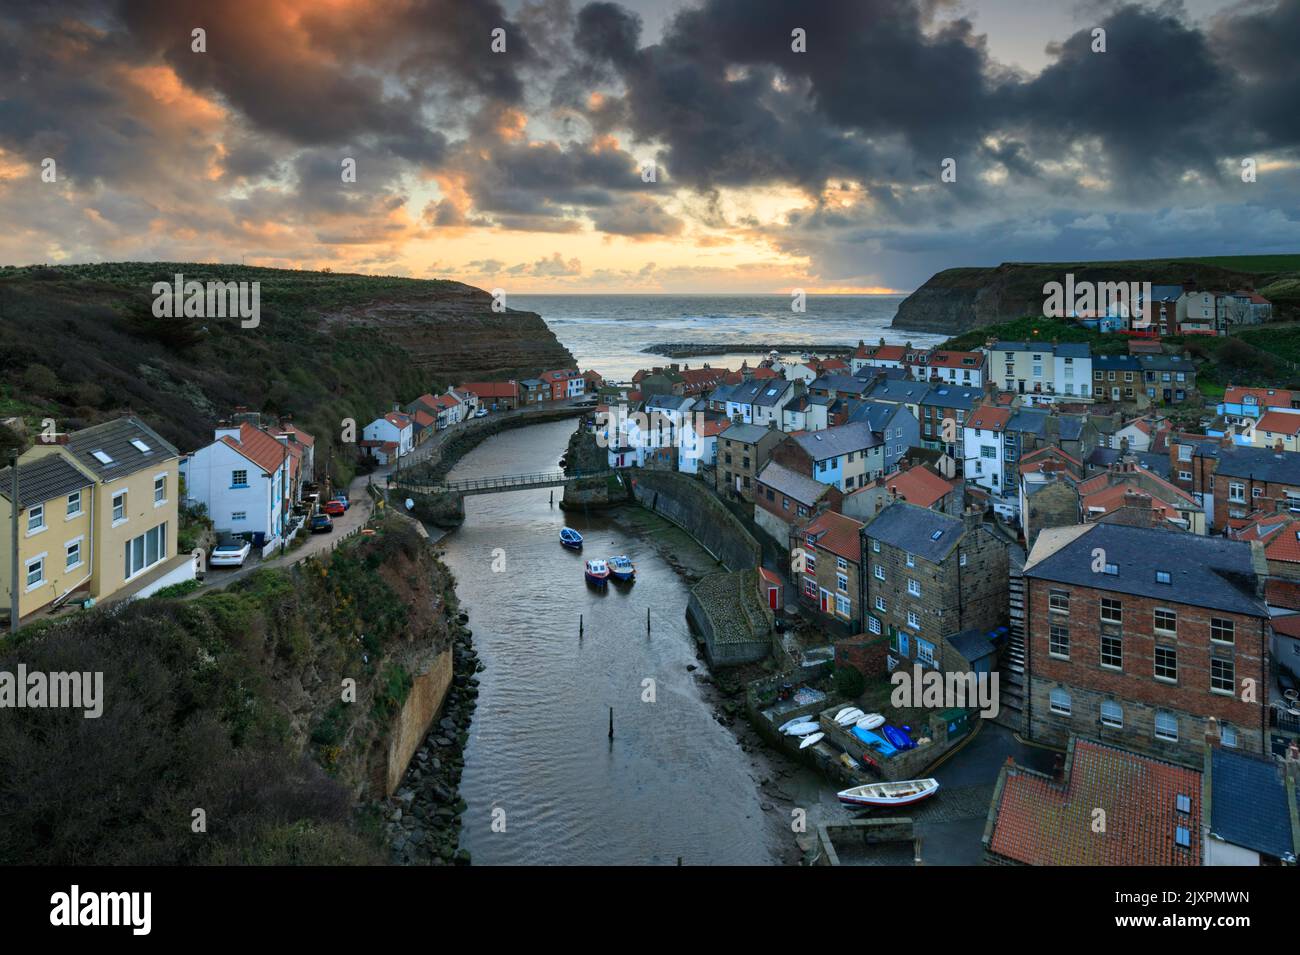 Le village pittoresque de Staithes, sur la côte du Yorkshire du Nord, capturé au lever du soleil. Banque D'Images